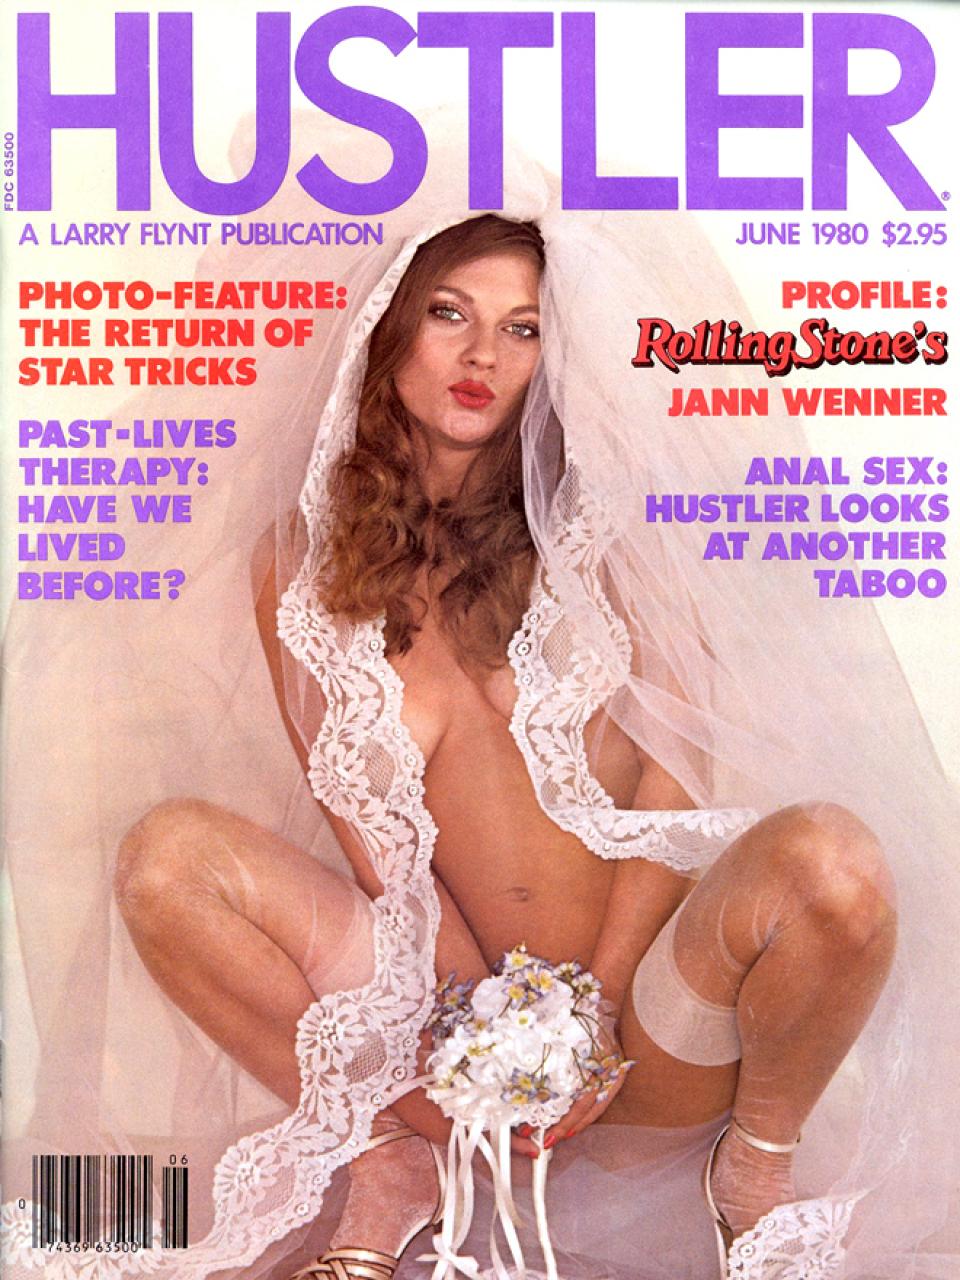 June 1980 - HUSTLER Magazine.